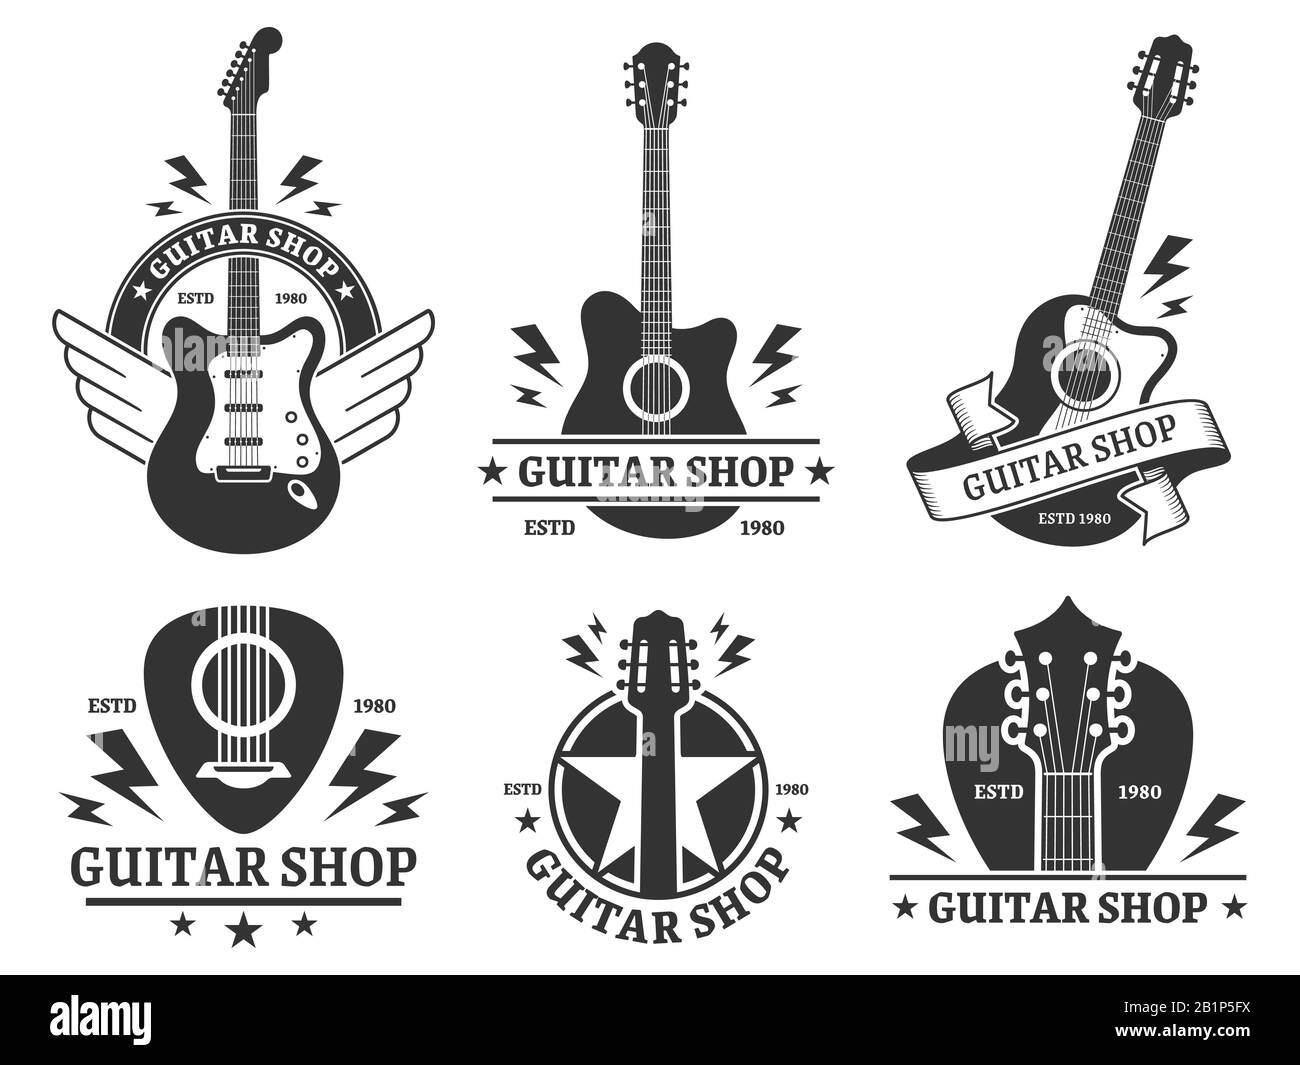 Badges de magasins de guitare. L'emblème de la boutique de guitares personnalisées, le titre de guitare et les instruments de musique stockent l'ensemble d'illustrations vectorielles de badge. Société musicale monochrome Illustration de Vecteur